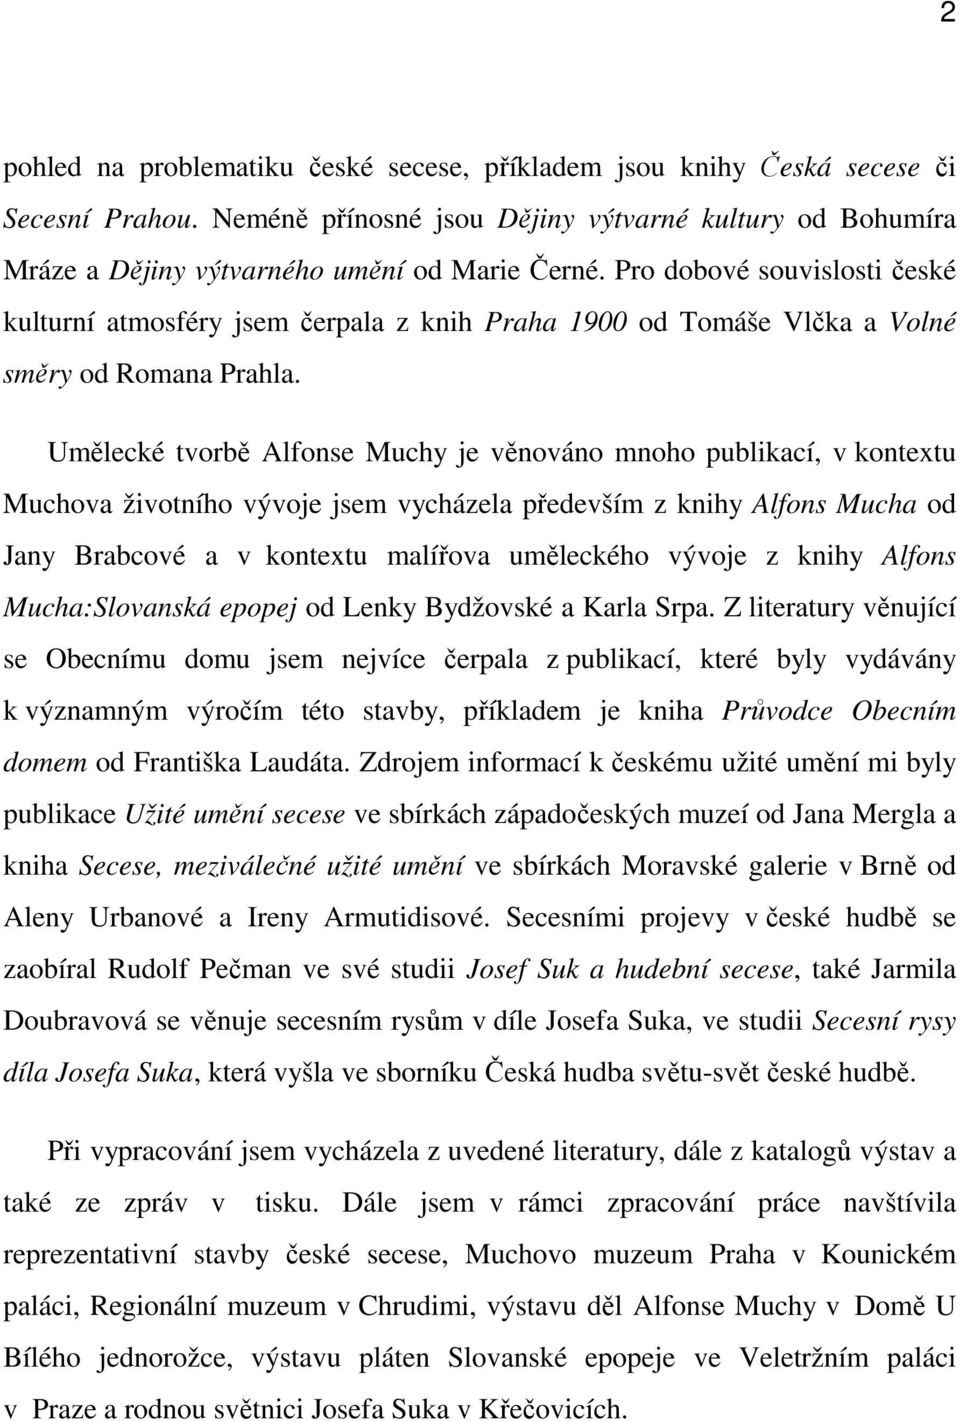 Umělecké tvorbě Alfonse Muchy je věnováno mnoho publikací, v kontextu Muchova životního vývoje jsem vycházela především z knihy Alfons Mucha od Jany Brabcové a v kontextu malířova uměleckého vývoje z